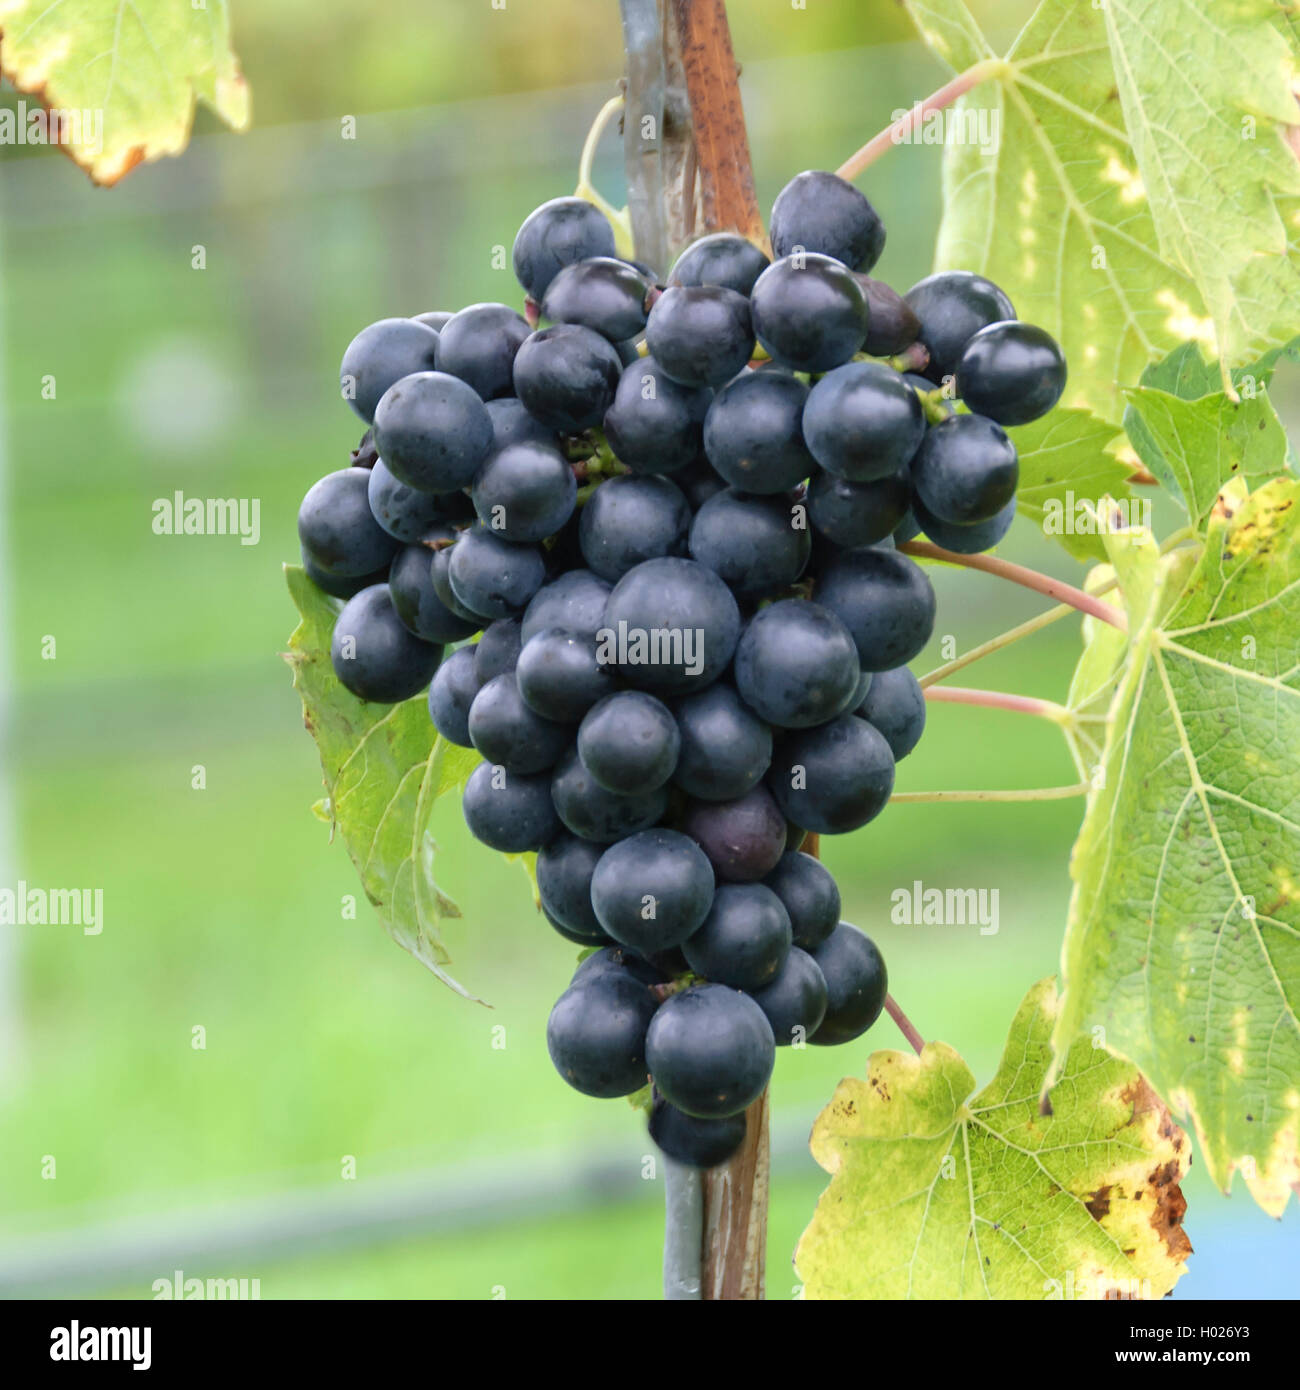 grape-vine, vine (Vitis vinifera 'Muscat Bleu', Vitis vinifera Muscat Bleu), cultivar Muscat Bleu, Germany, Bavaria Stock Photo